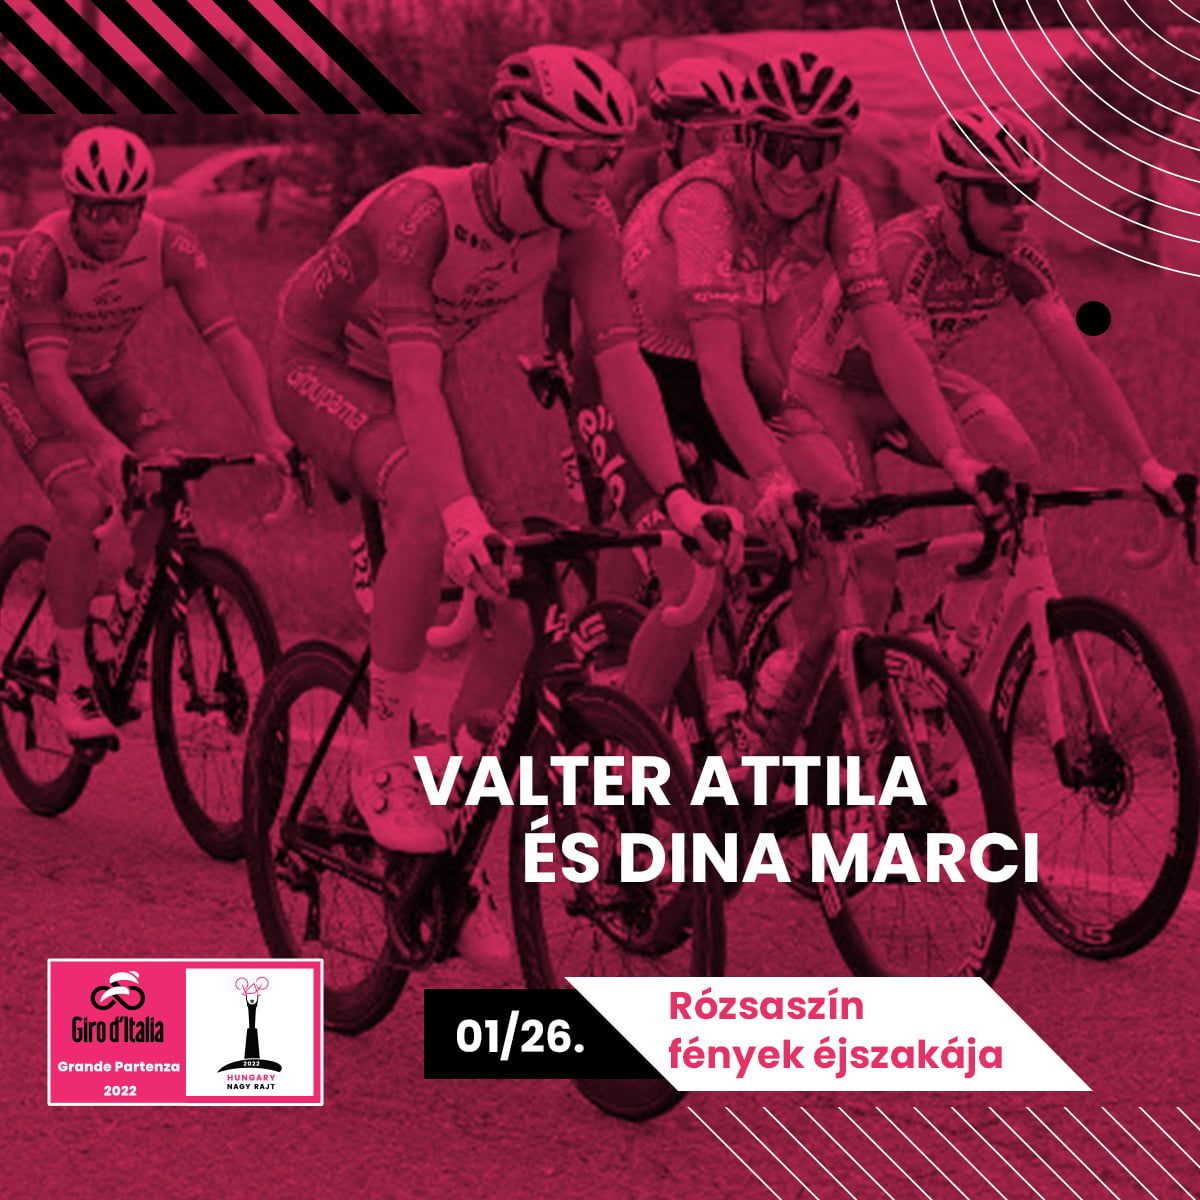 Rózsaszín fények éjszakája Valter Attilával és Dina Mártonnal. Giro Hungary 2022 Facebook-oldala